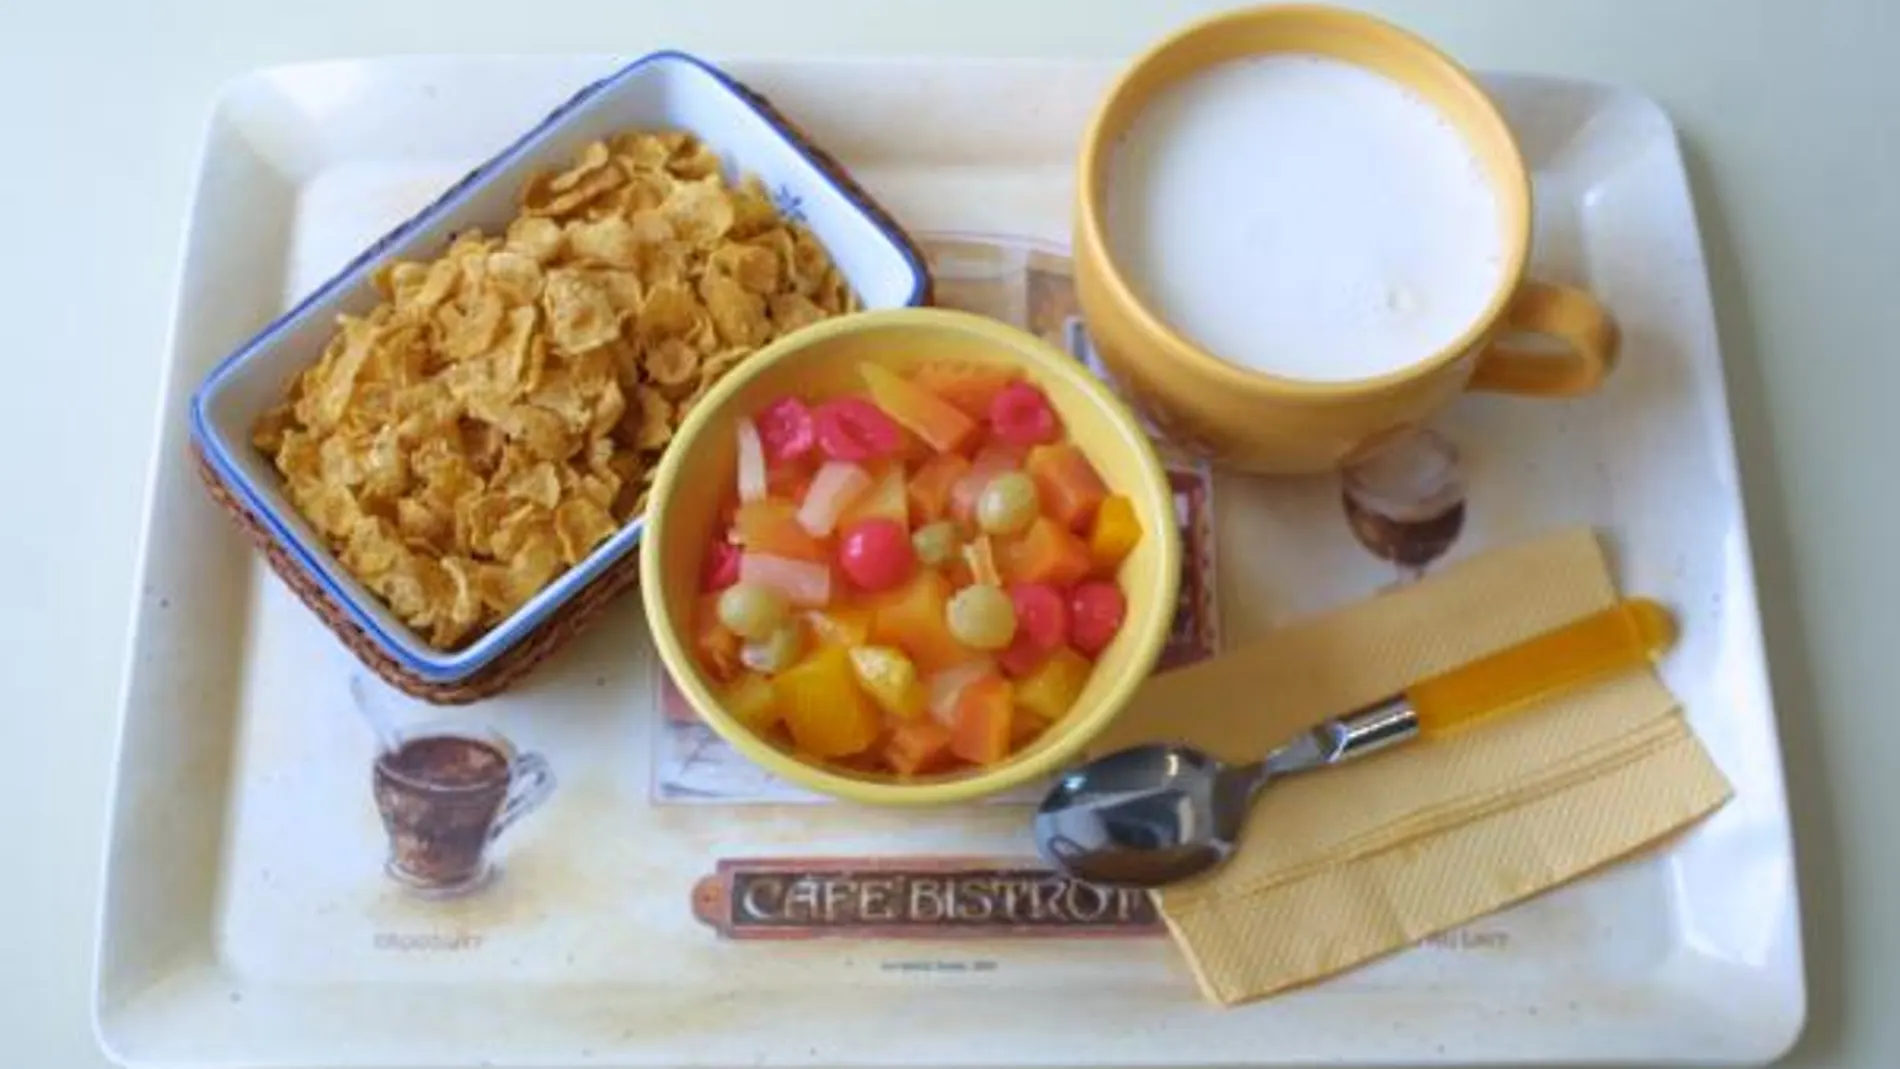 un 35 por ciento toma cereales para el desayuno de forma regular